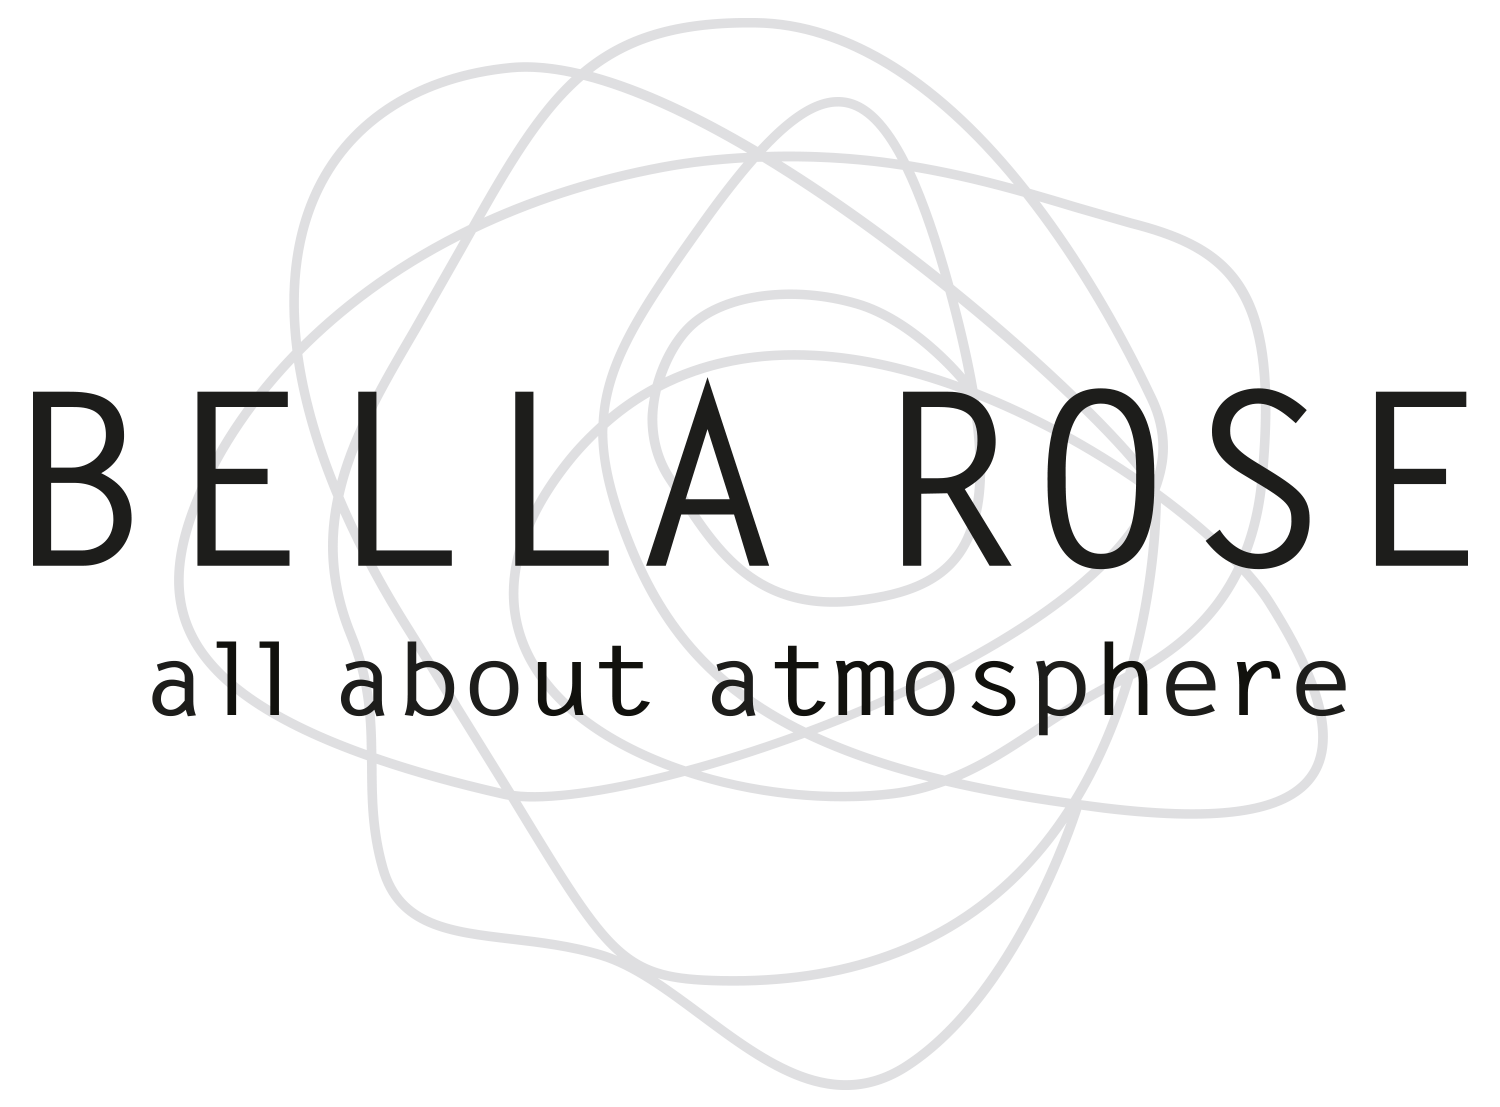 Bellarose logo